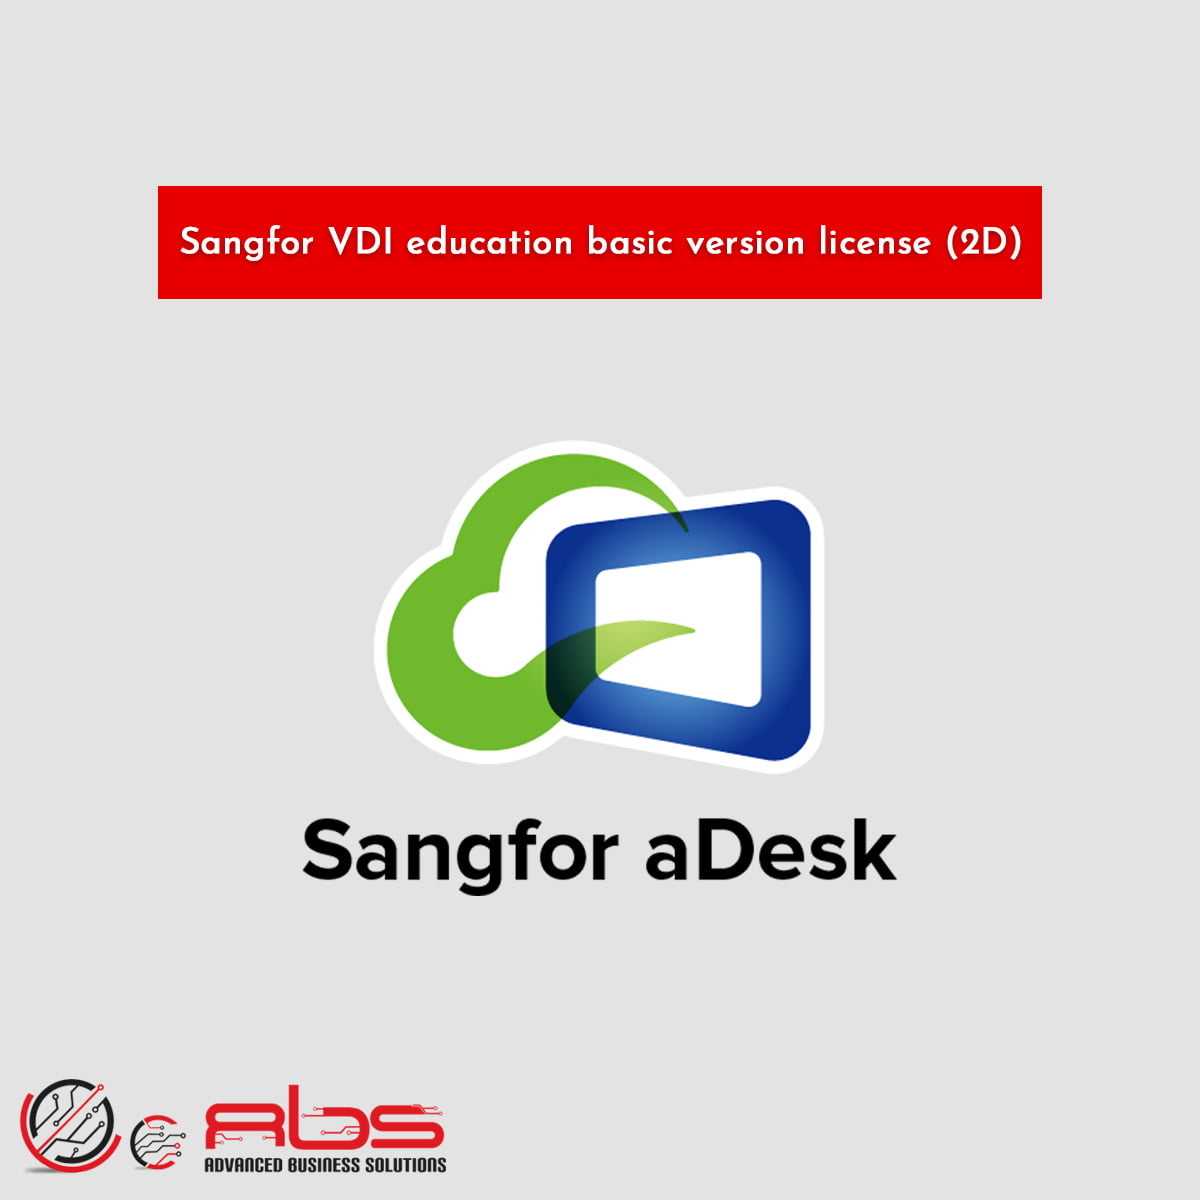 Sangfor VDI education basic version license (2D)